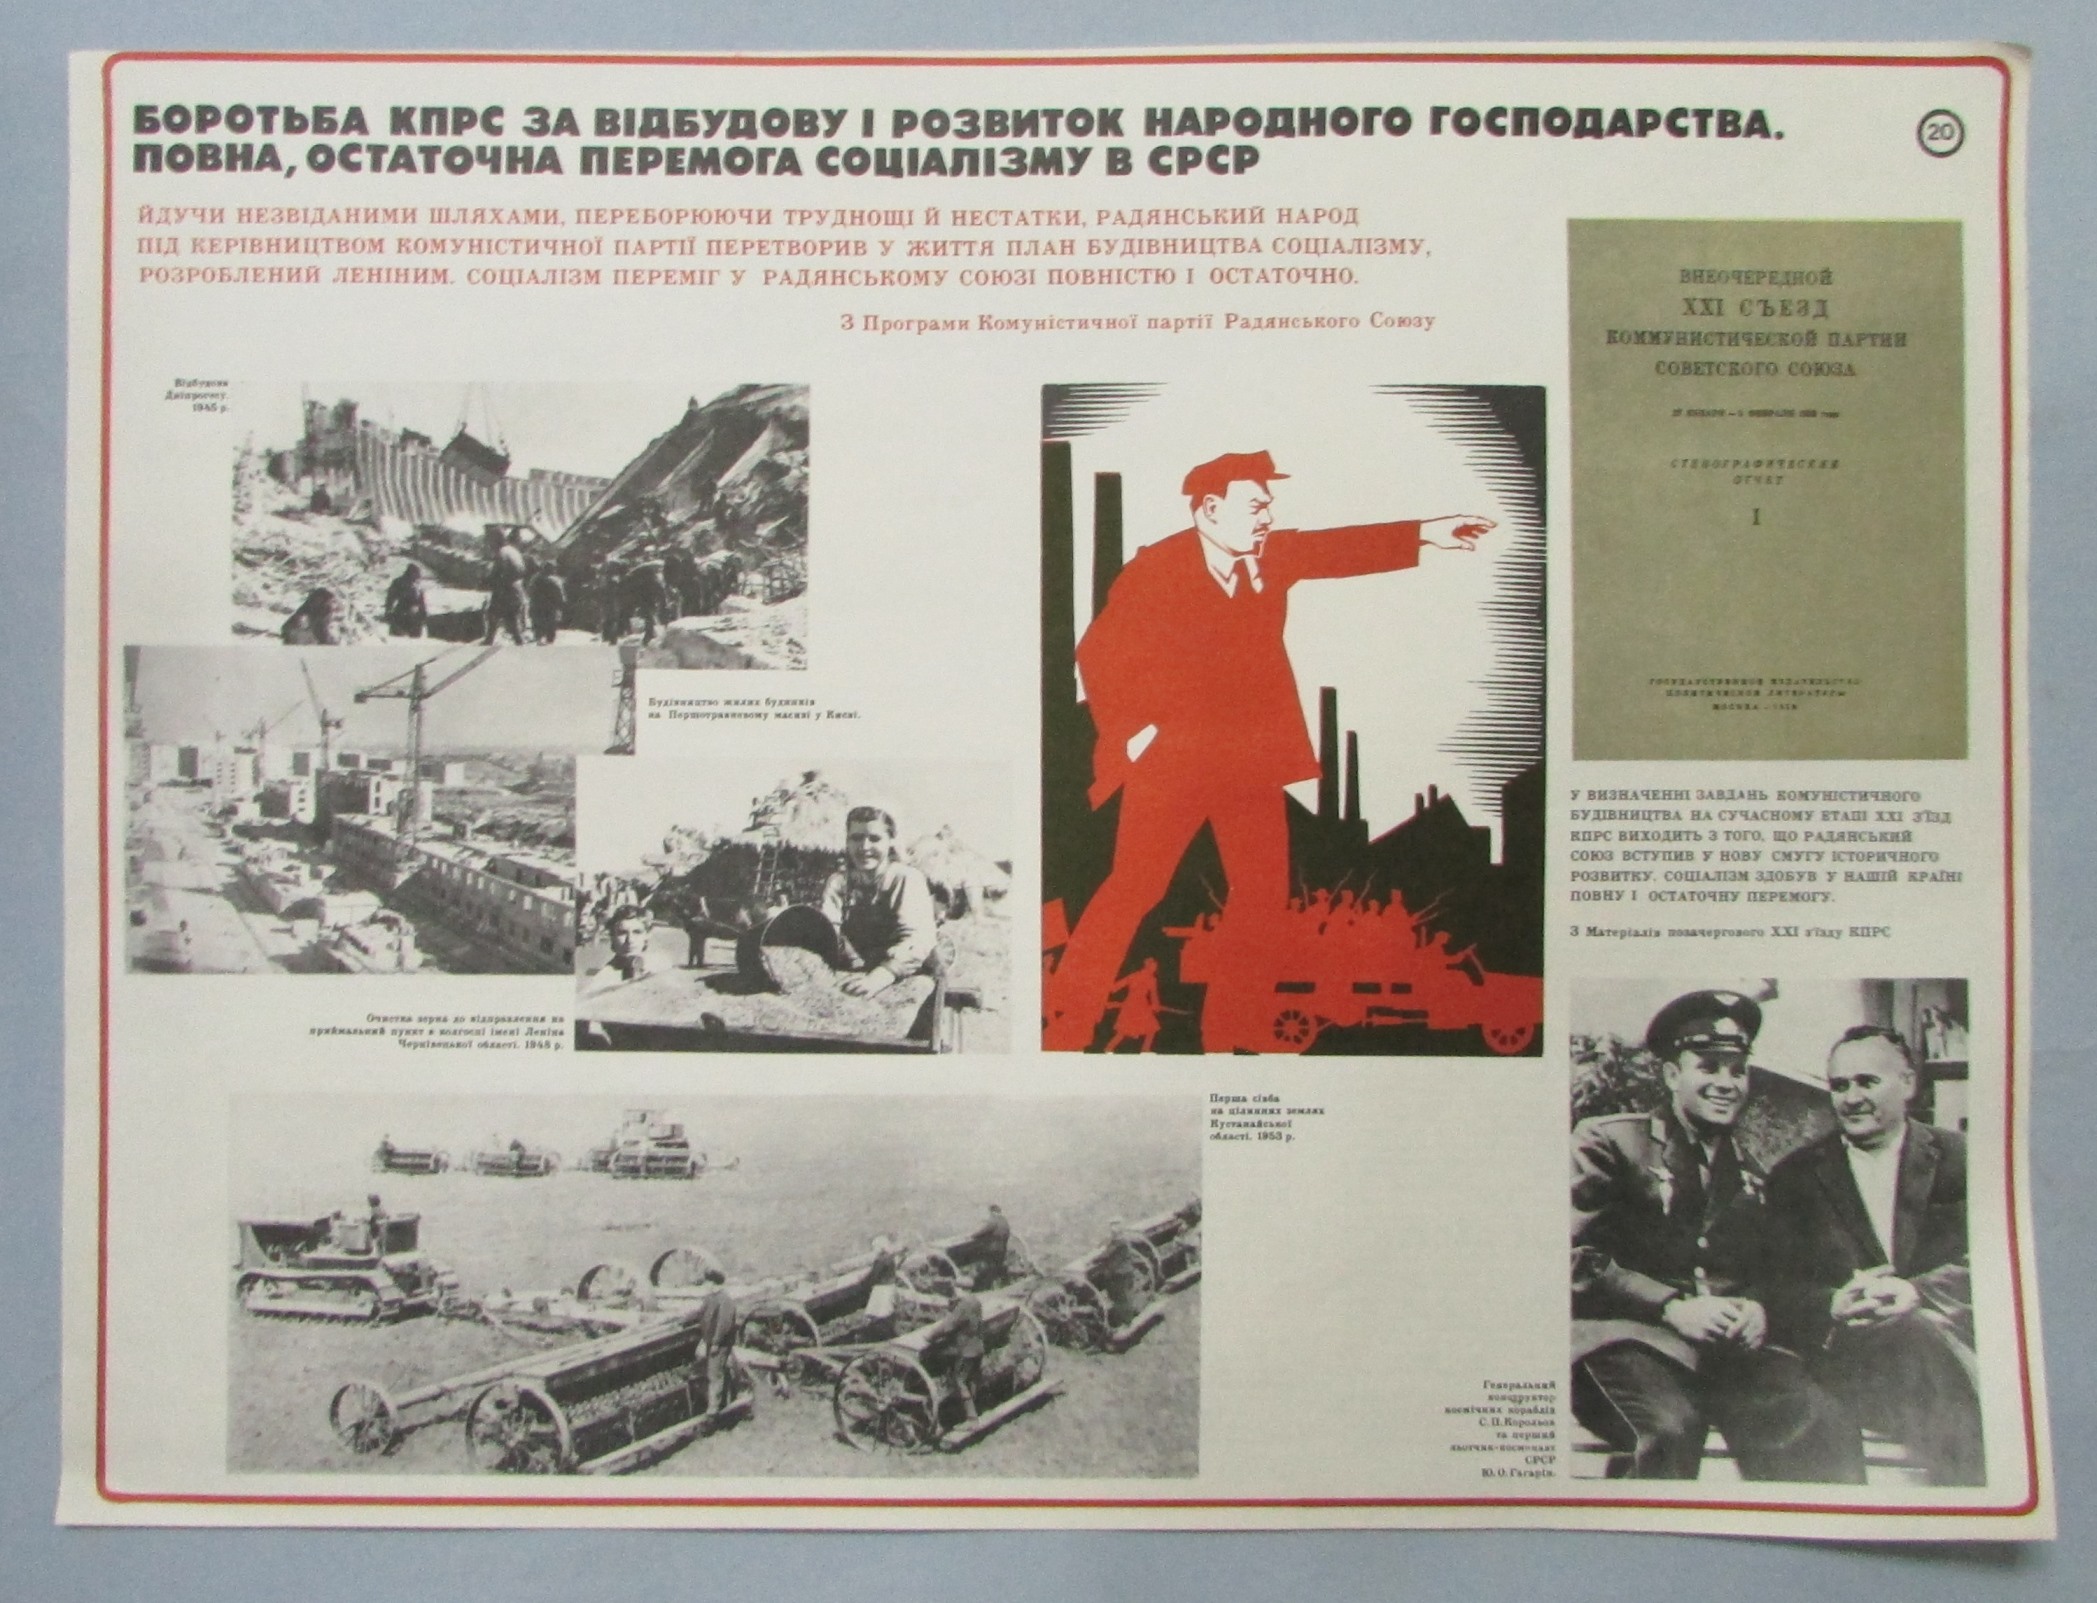 Плакат "В. І. Ленін. Боротьба КПРС за відбудову і розвиток народного господарства. Повна, остаточна перемога соціалізму в СРСР. Наочний посібник з 24 таблиць"